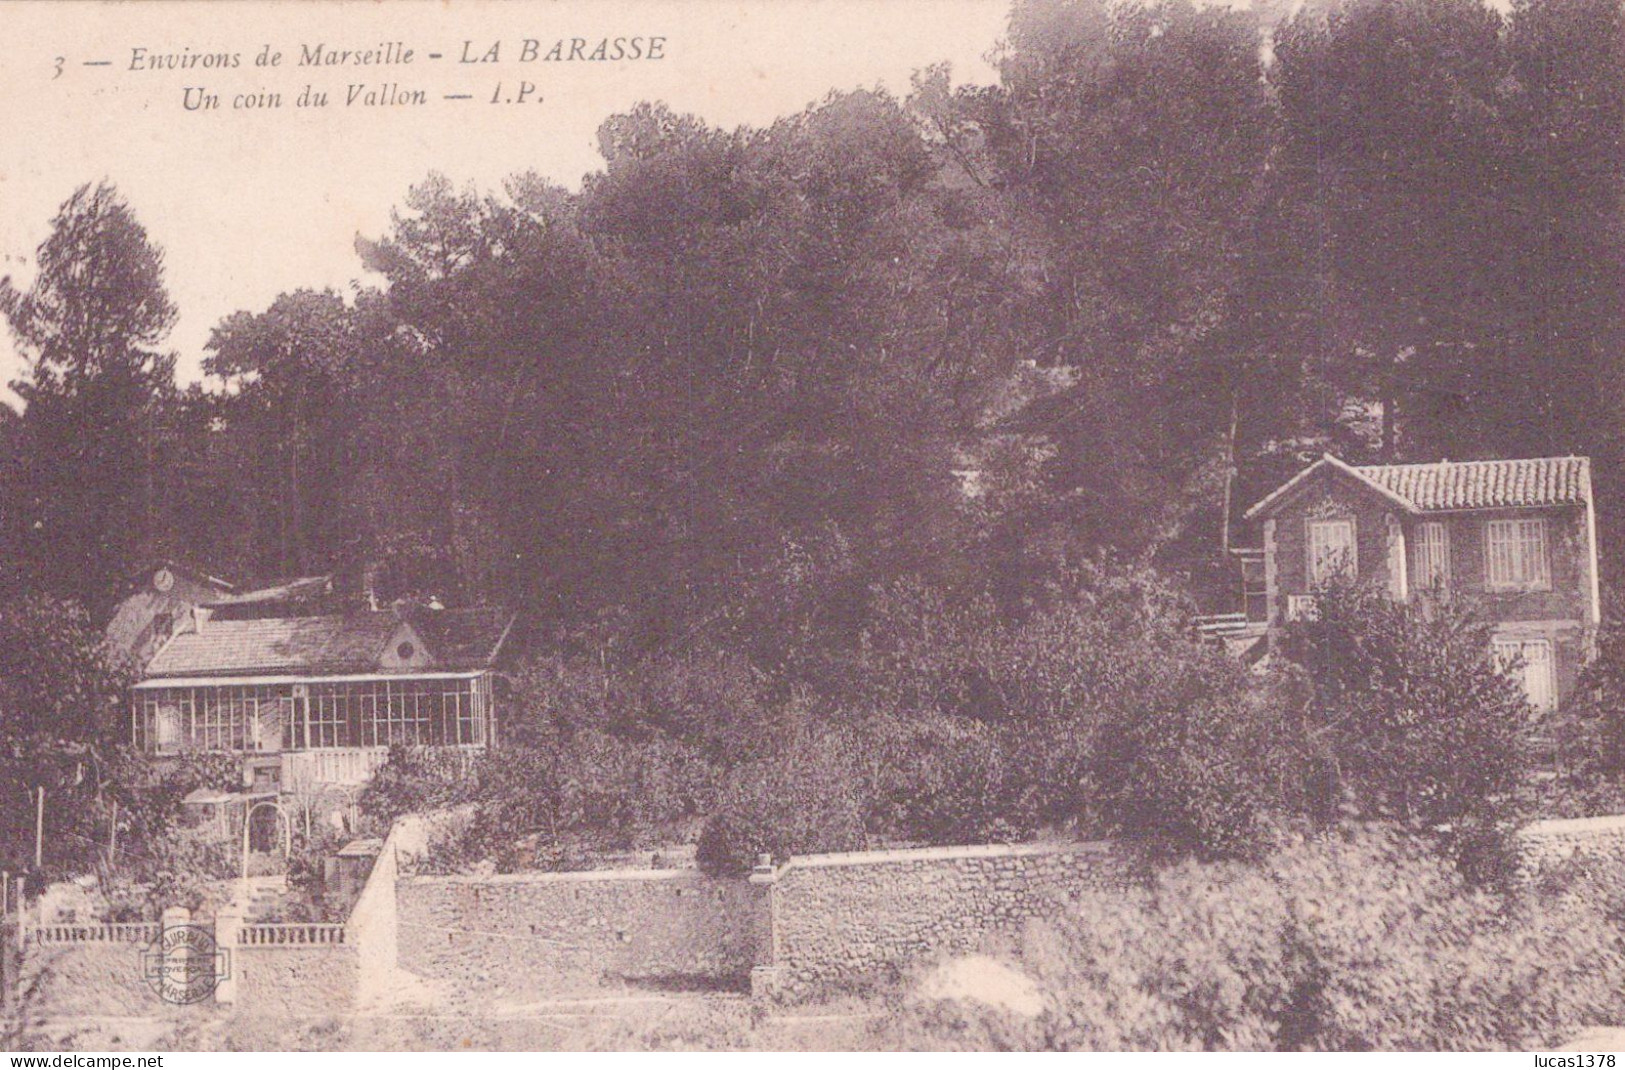 13 / MARSEILLE / LA BARASSE / UN COIN DU VALLON  / IP 3 - Saint Marcel, La Barasse, Saint Menet